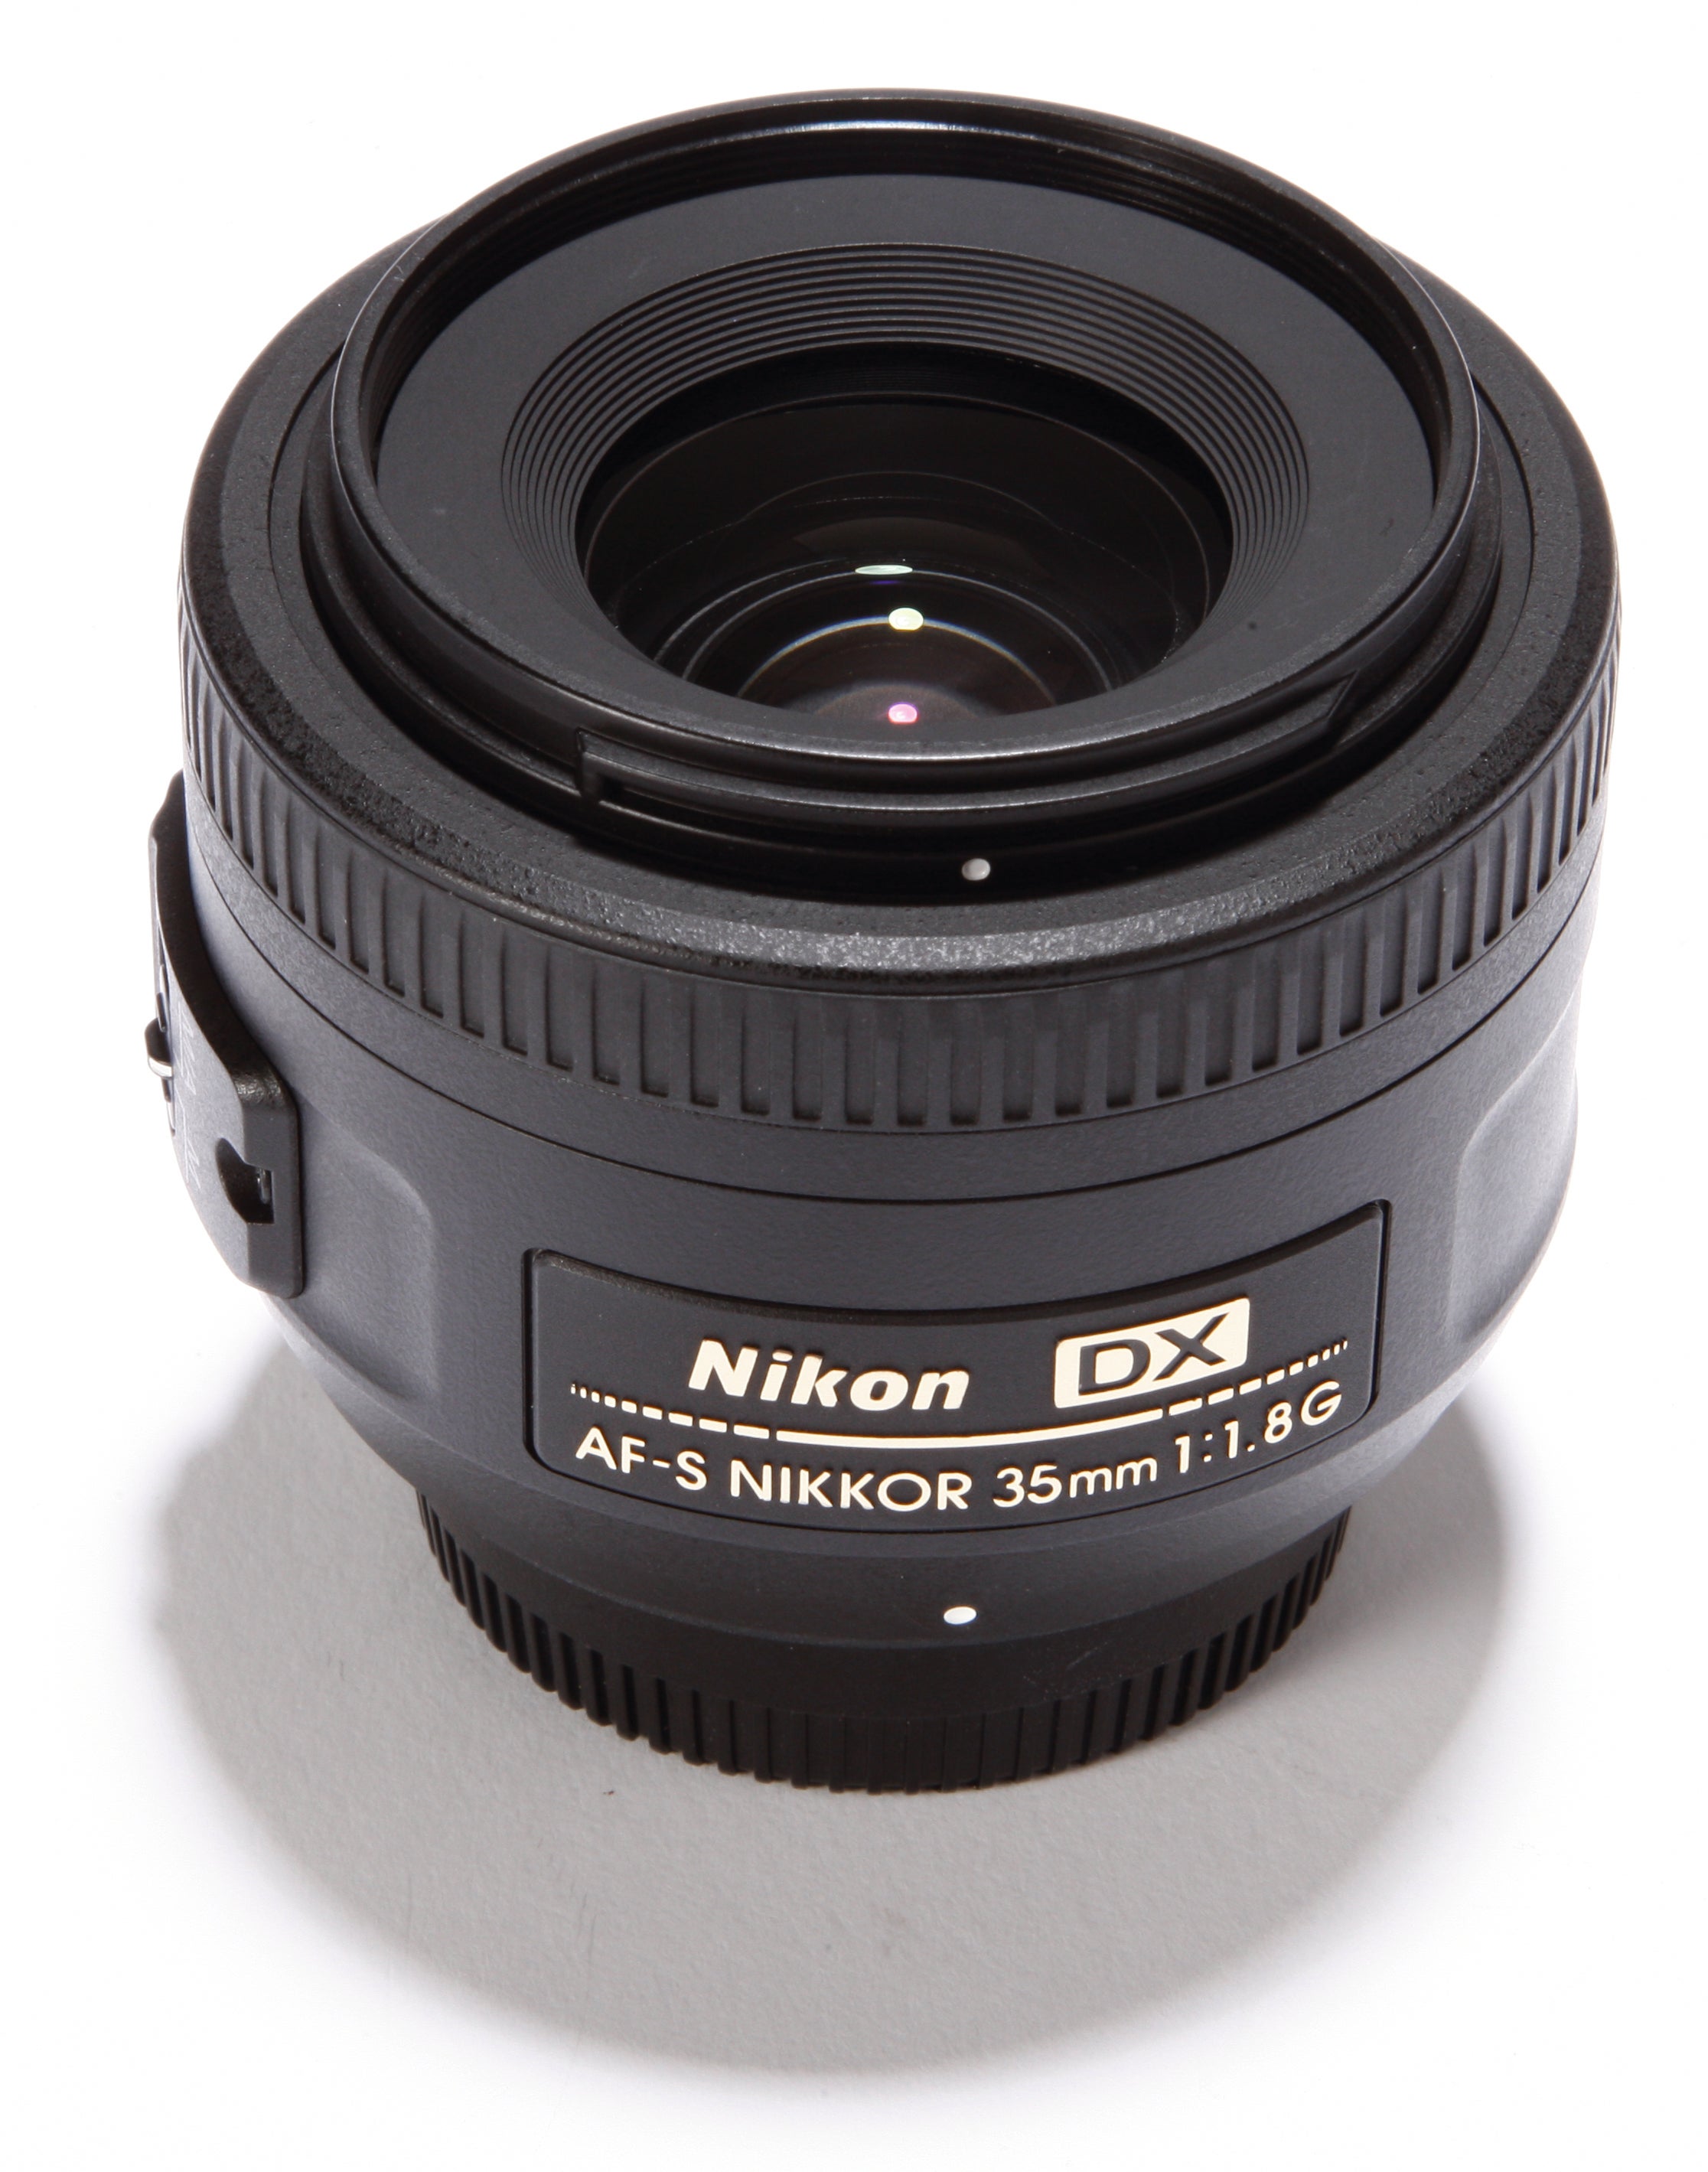 Whimsical Seaboard Generosity Nikon AF-S DX Nikkor 35mm f/1.8G Lens Review